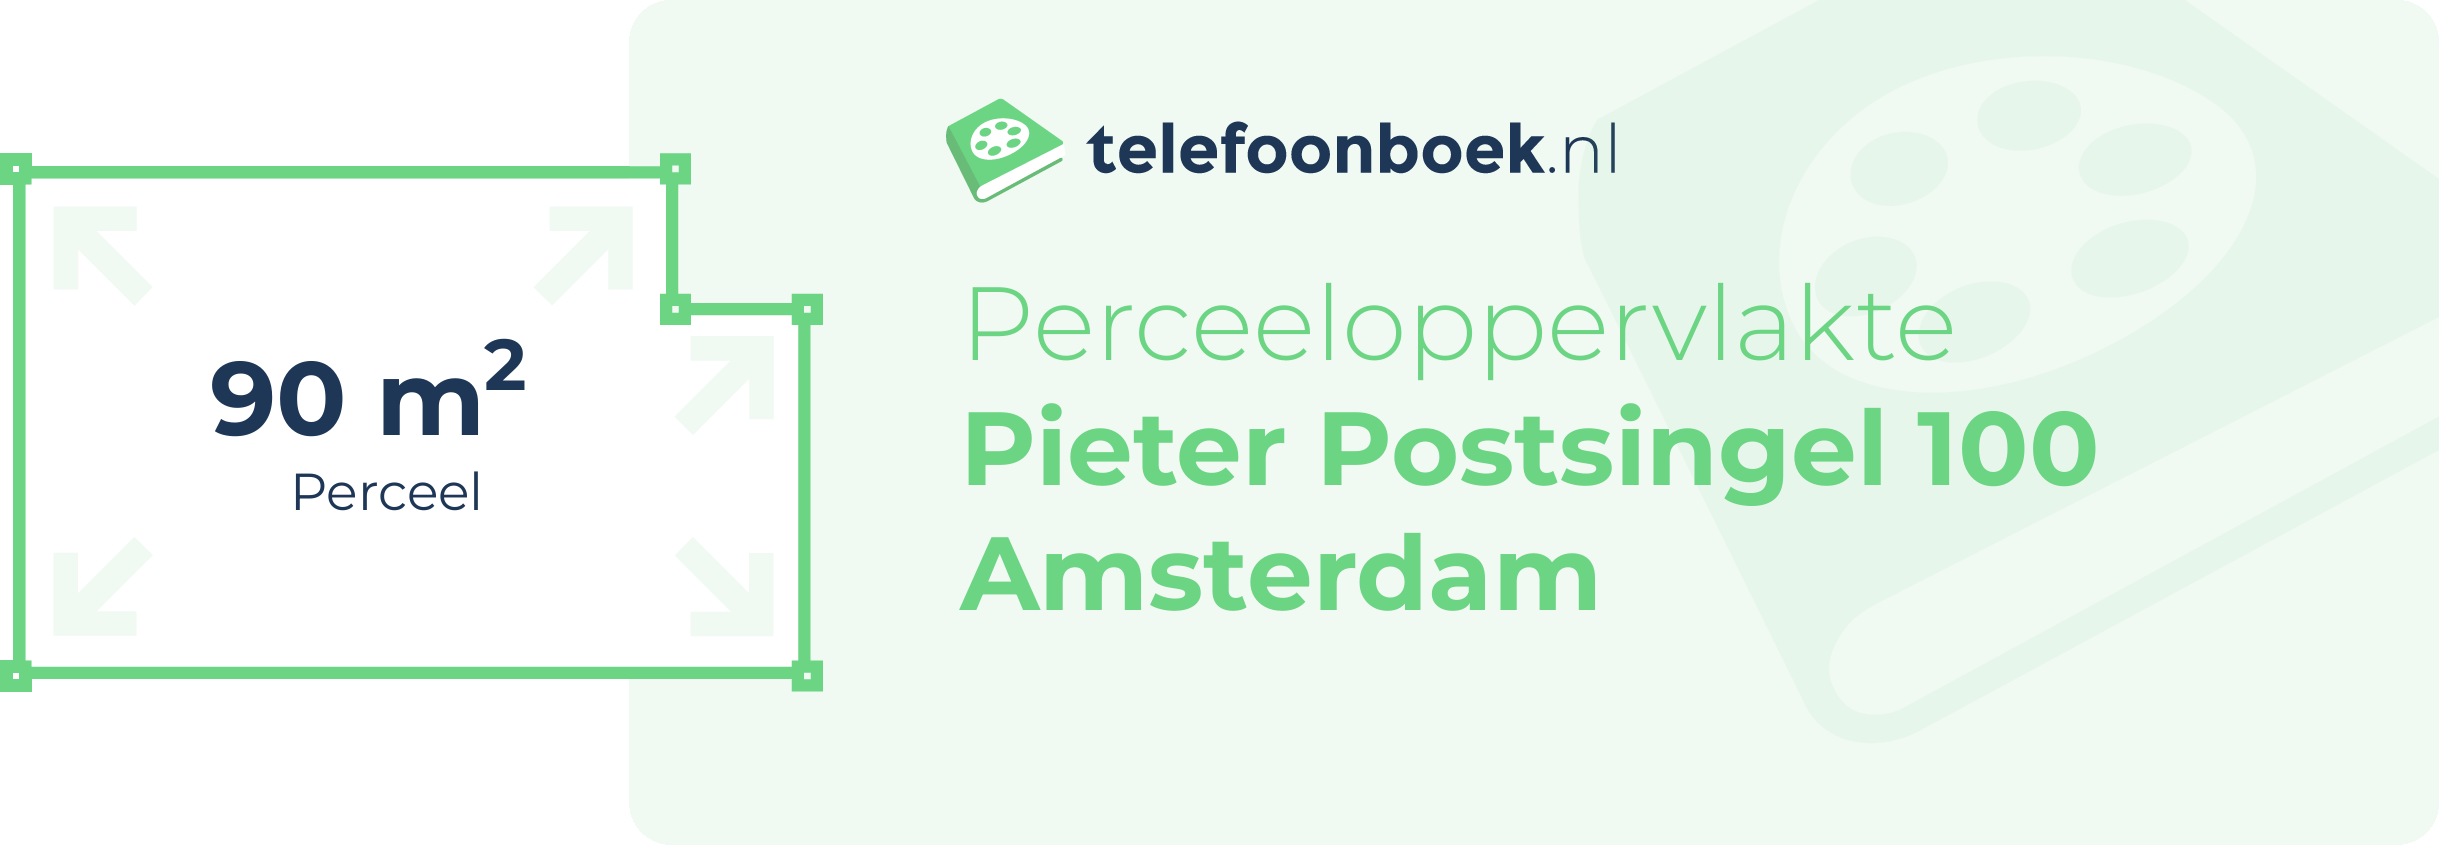 Perceeloppervlakte Pieter Postsingel 100 Amsterdam